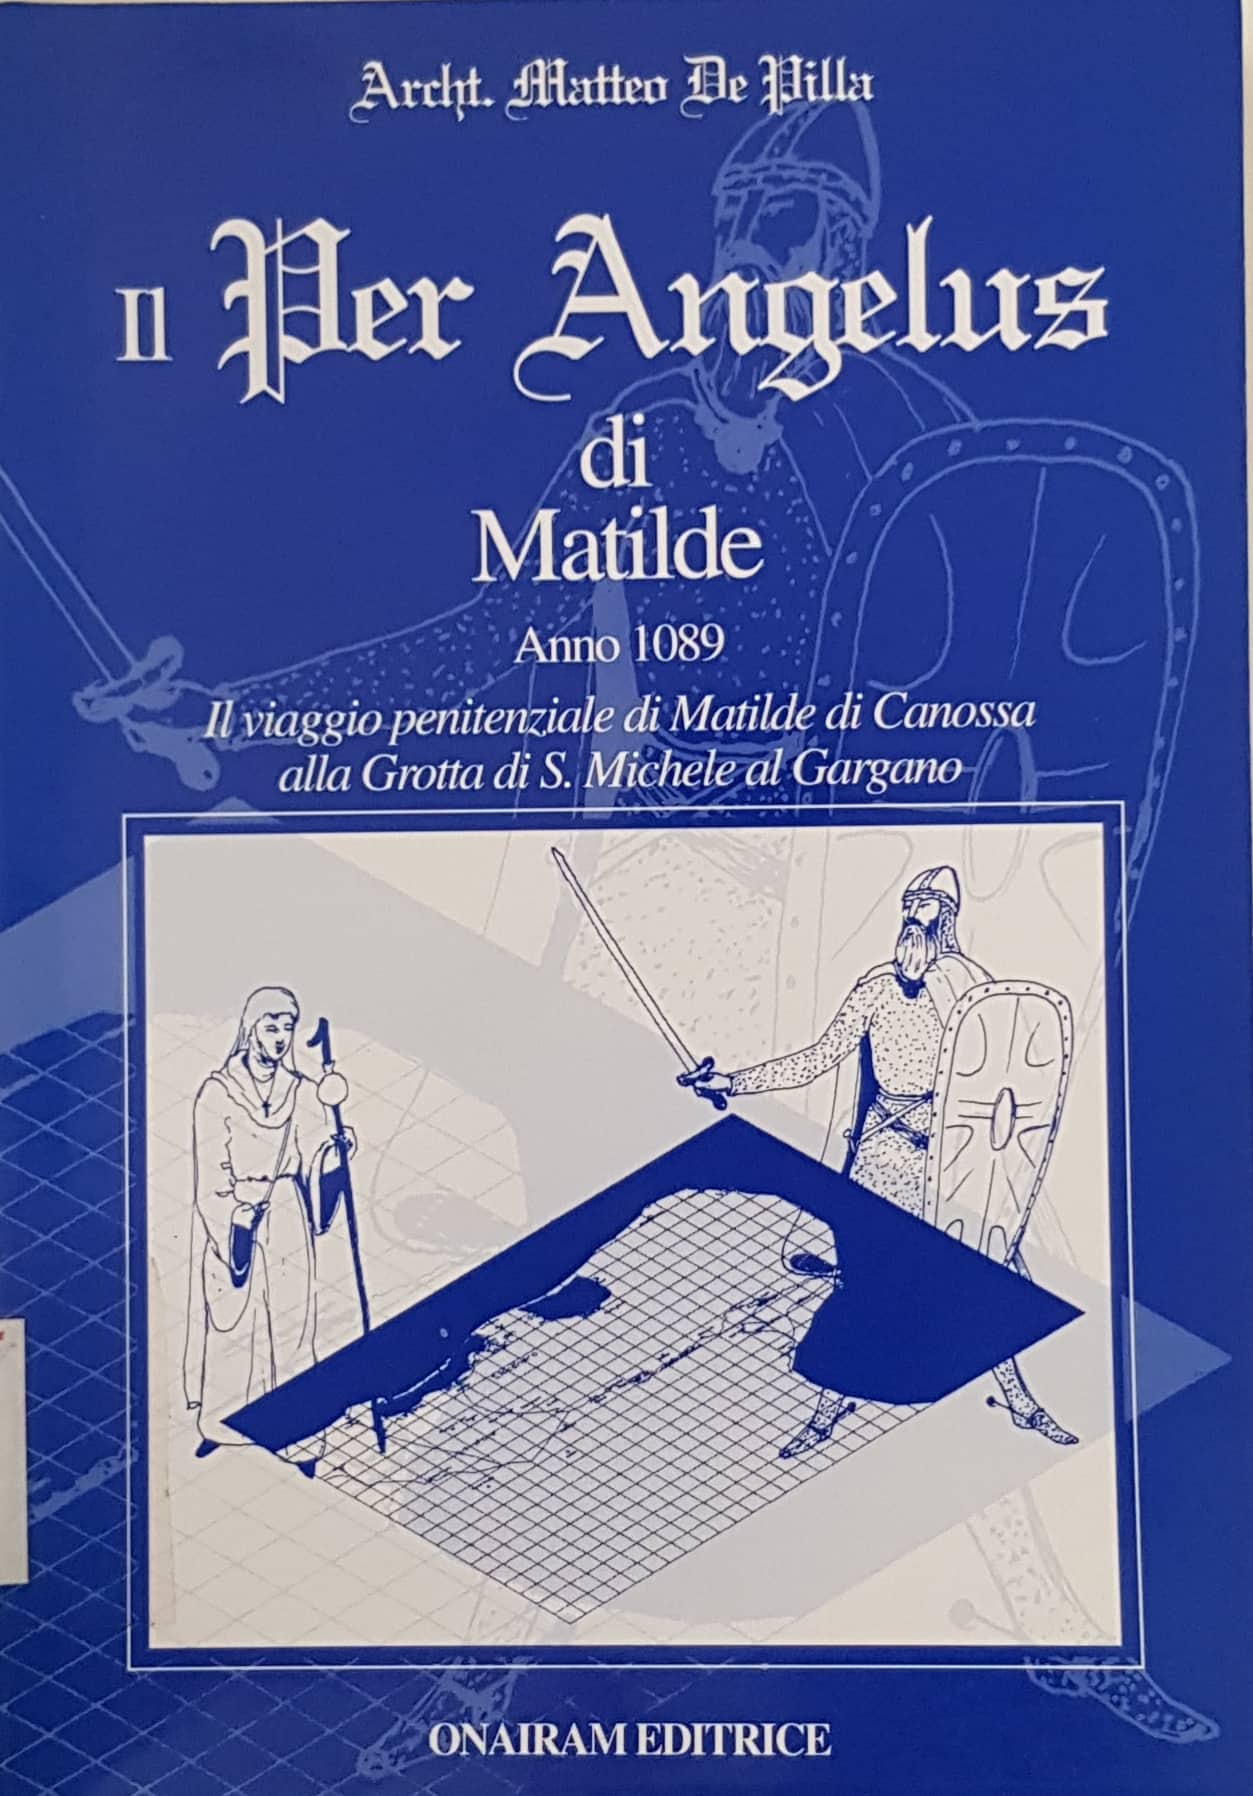 Copertina di Il per angelus di Matilde anno 1089